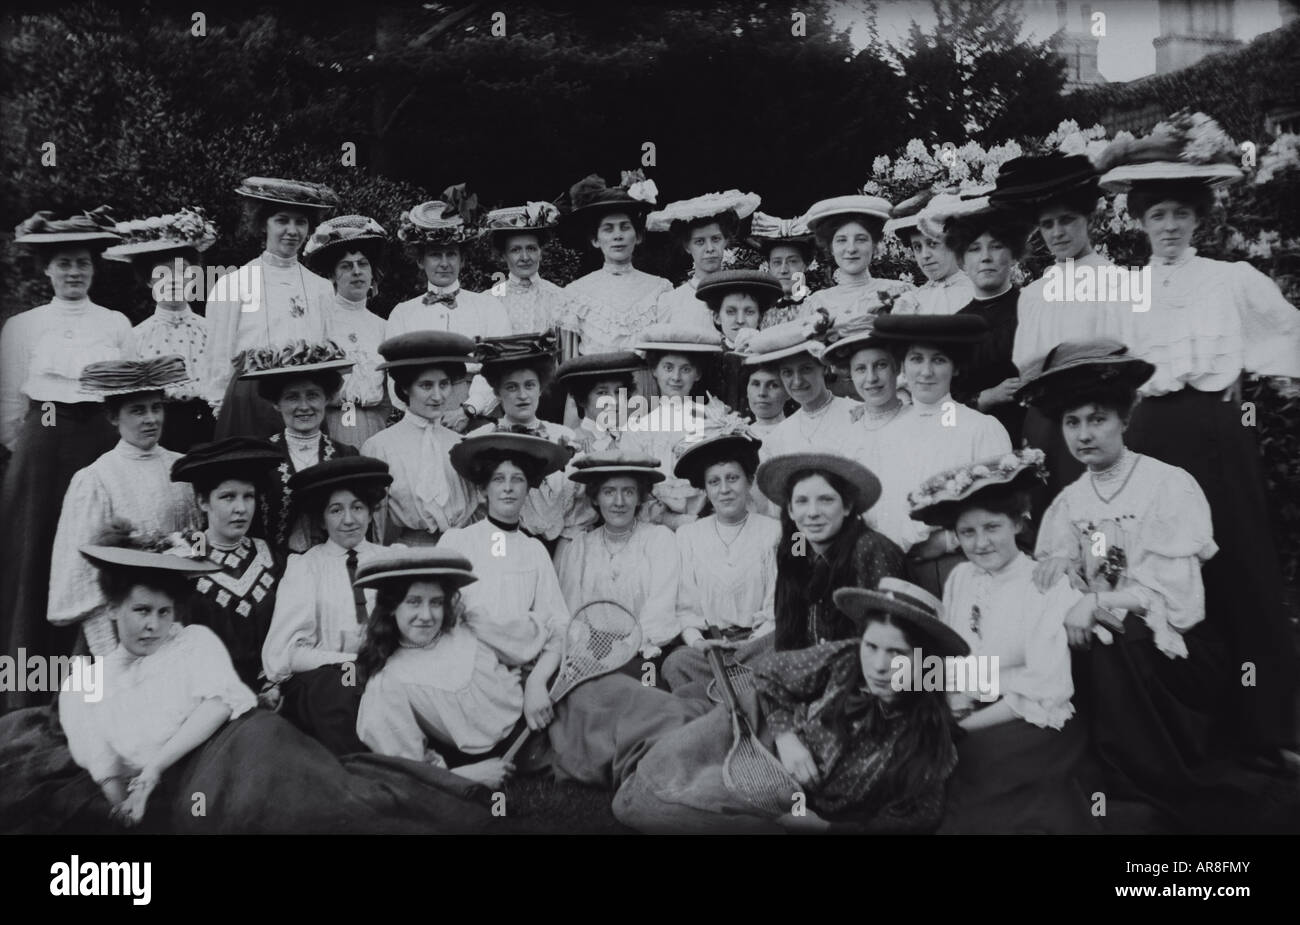 Grupo de mujeres Eduardiana posando con raquetas de tenis. Fecha: 1910. Ubicación: Desconocido, Reino Unido. Negativos de vidrio. Foto de stock